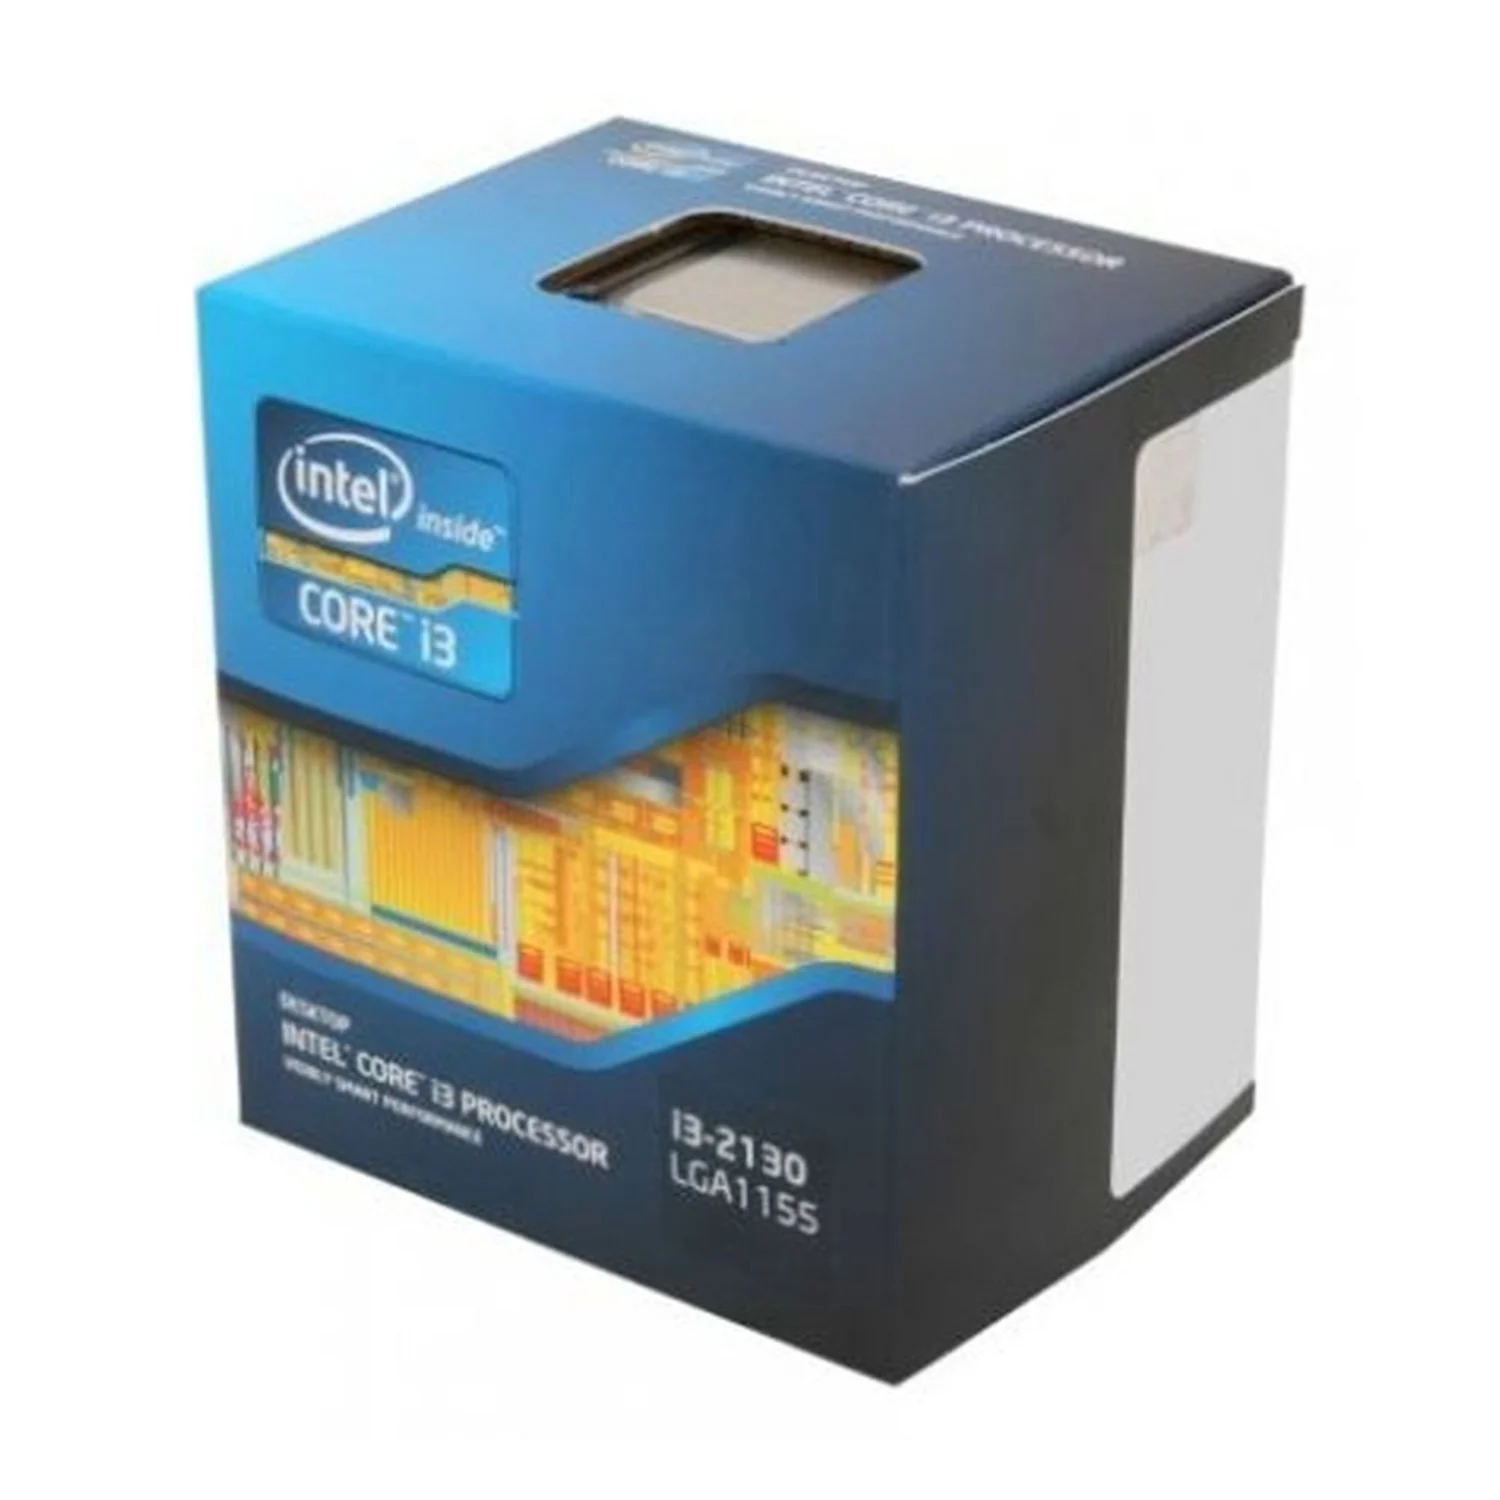 Processador Intel Core i3-2130 / Soquete 1155 / 2C/4T - OEM